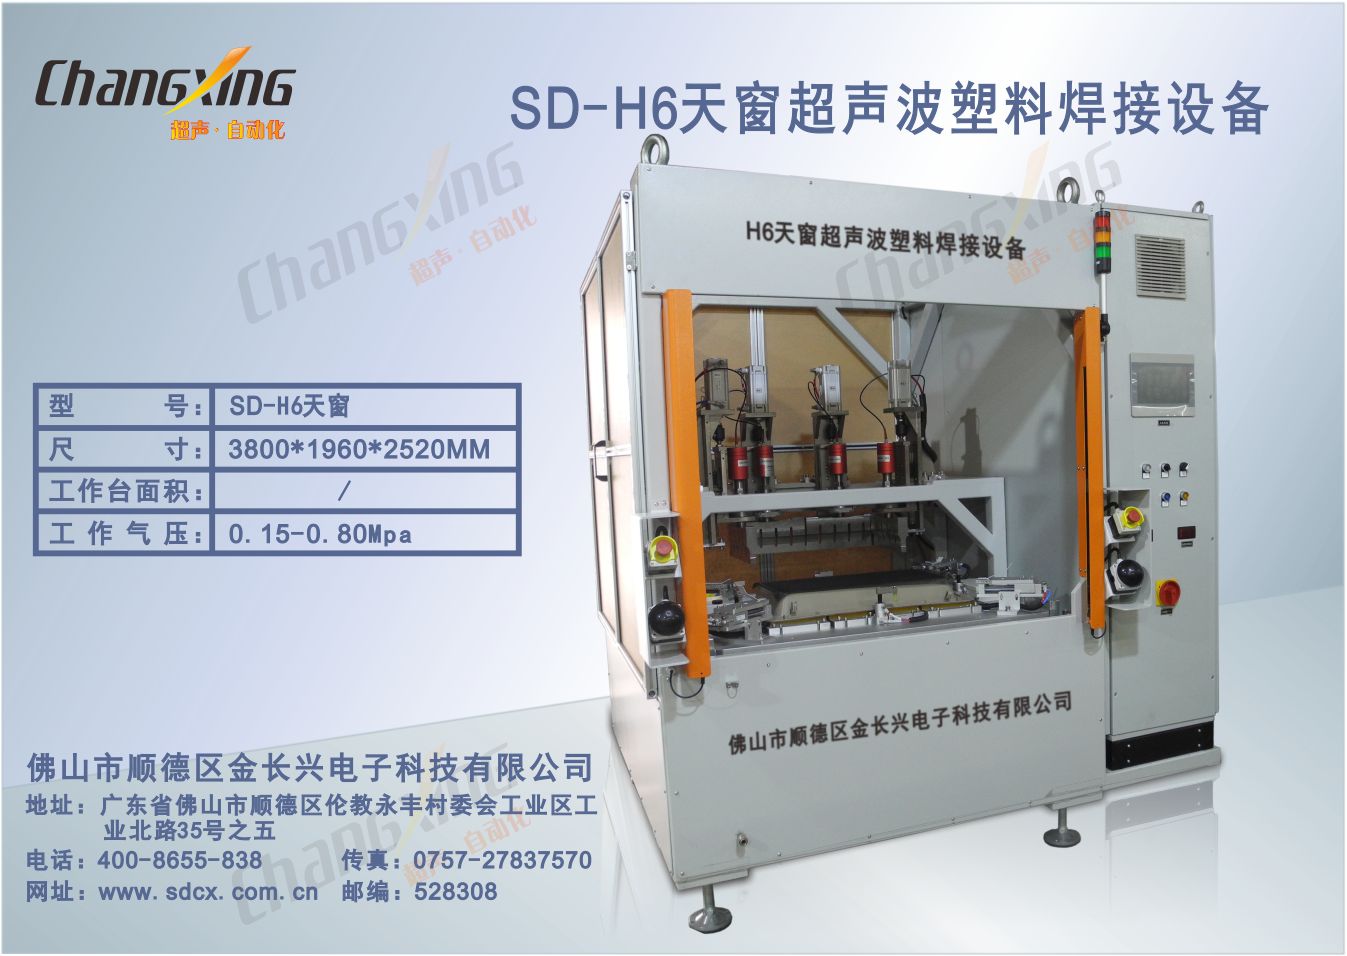 SD-H6天窗超声波焊接机